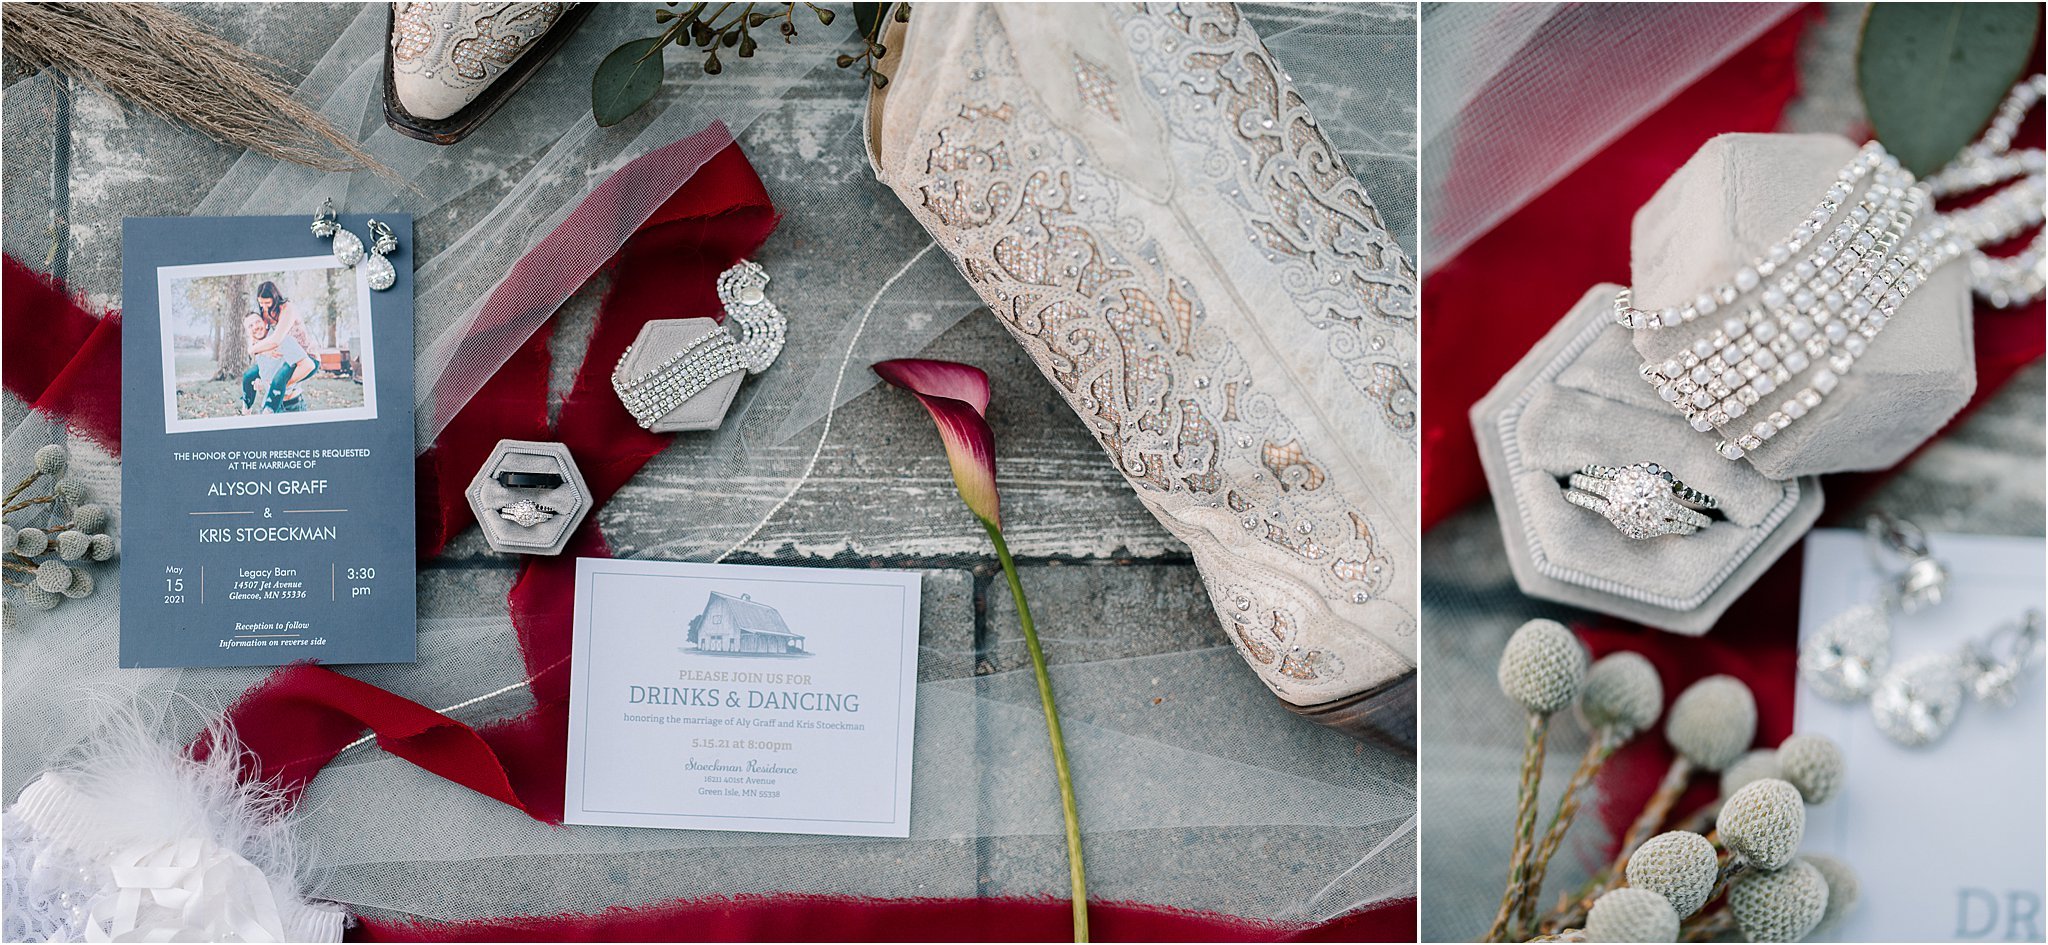 Wedding day details